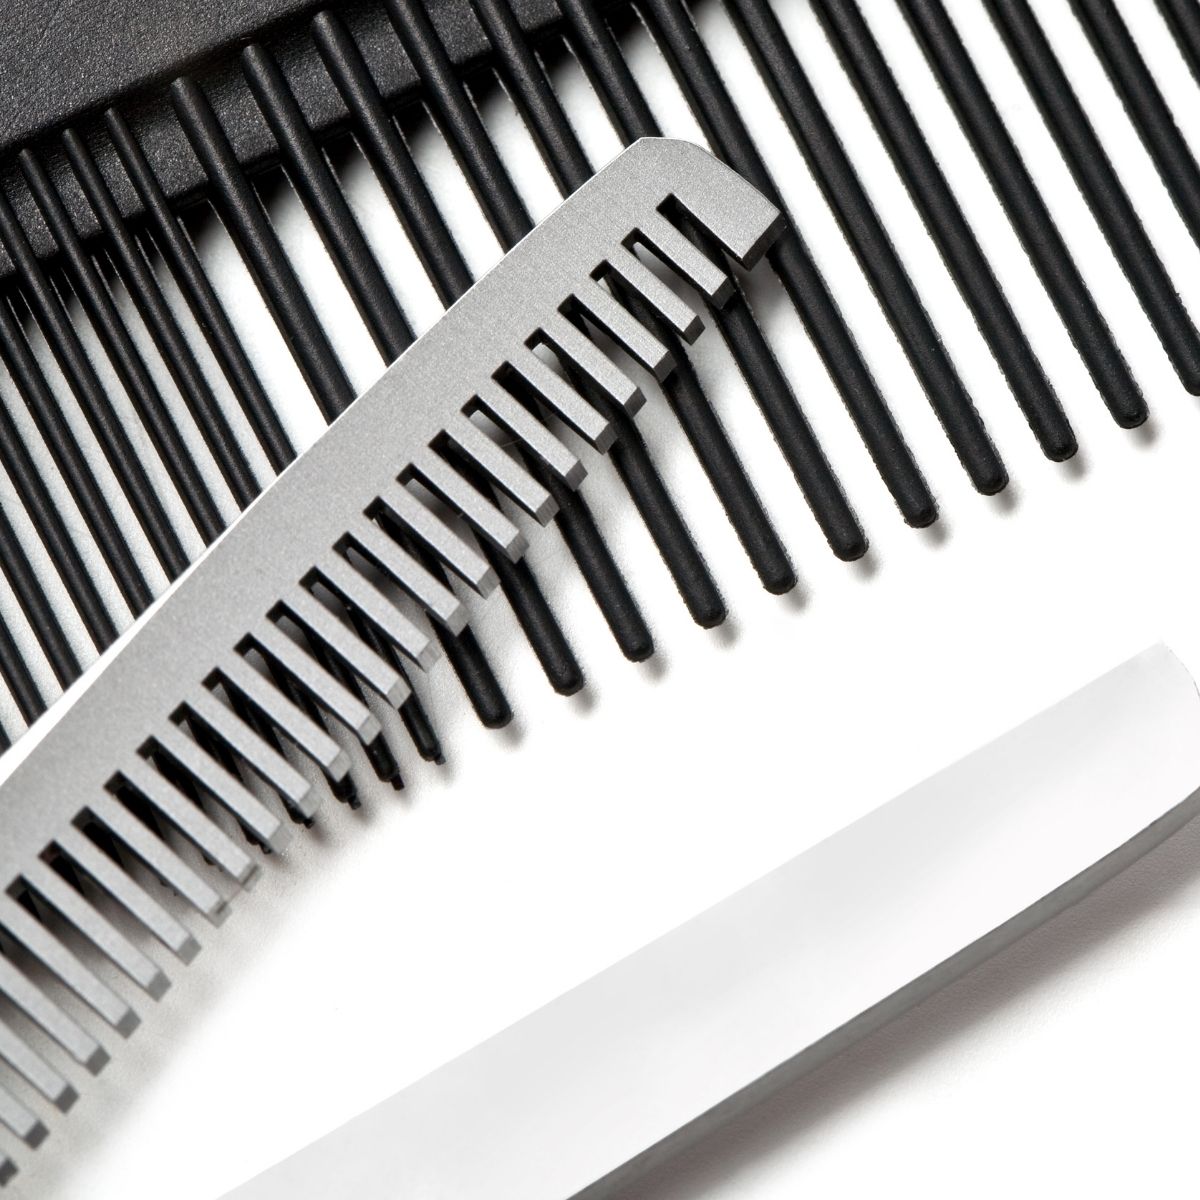 Les différents ciseaux de texturation des cheveux utilisés par les coiffeurs